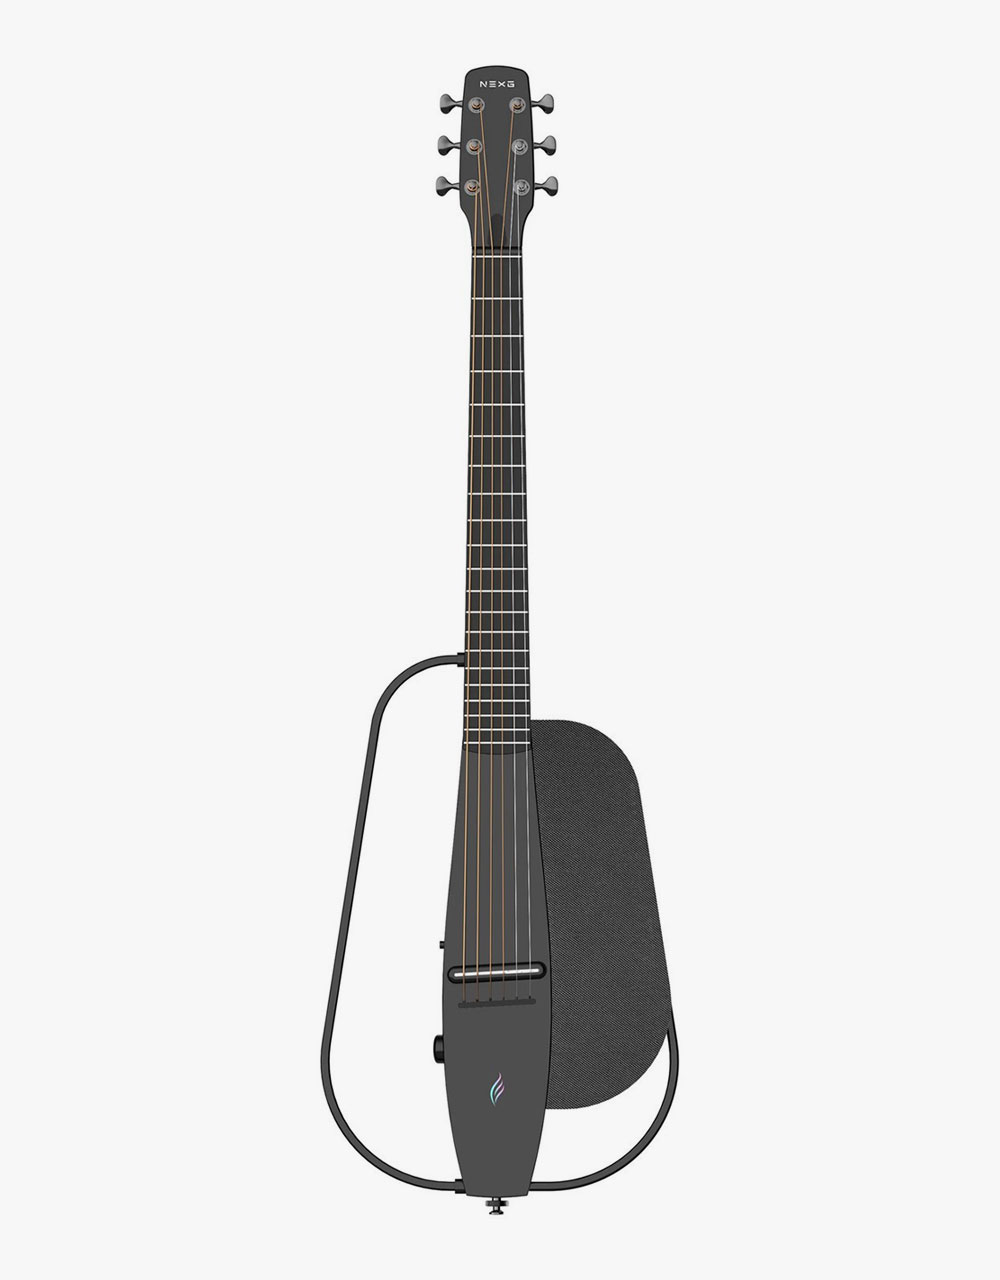 Трансакустическая гитара Enya NEXG-BK - купить в "Гитарном Клубе"